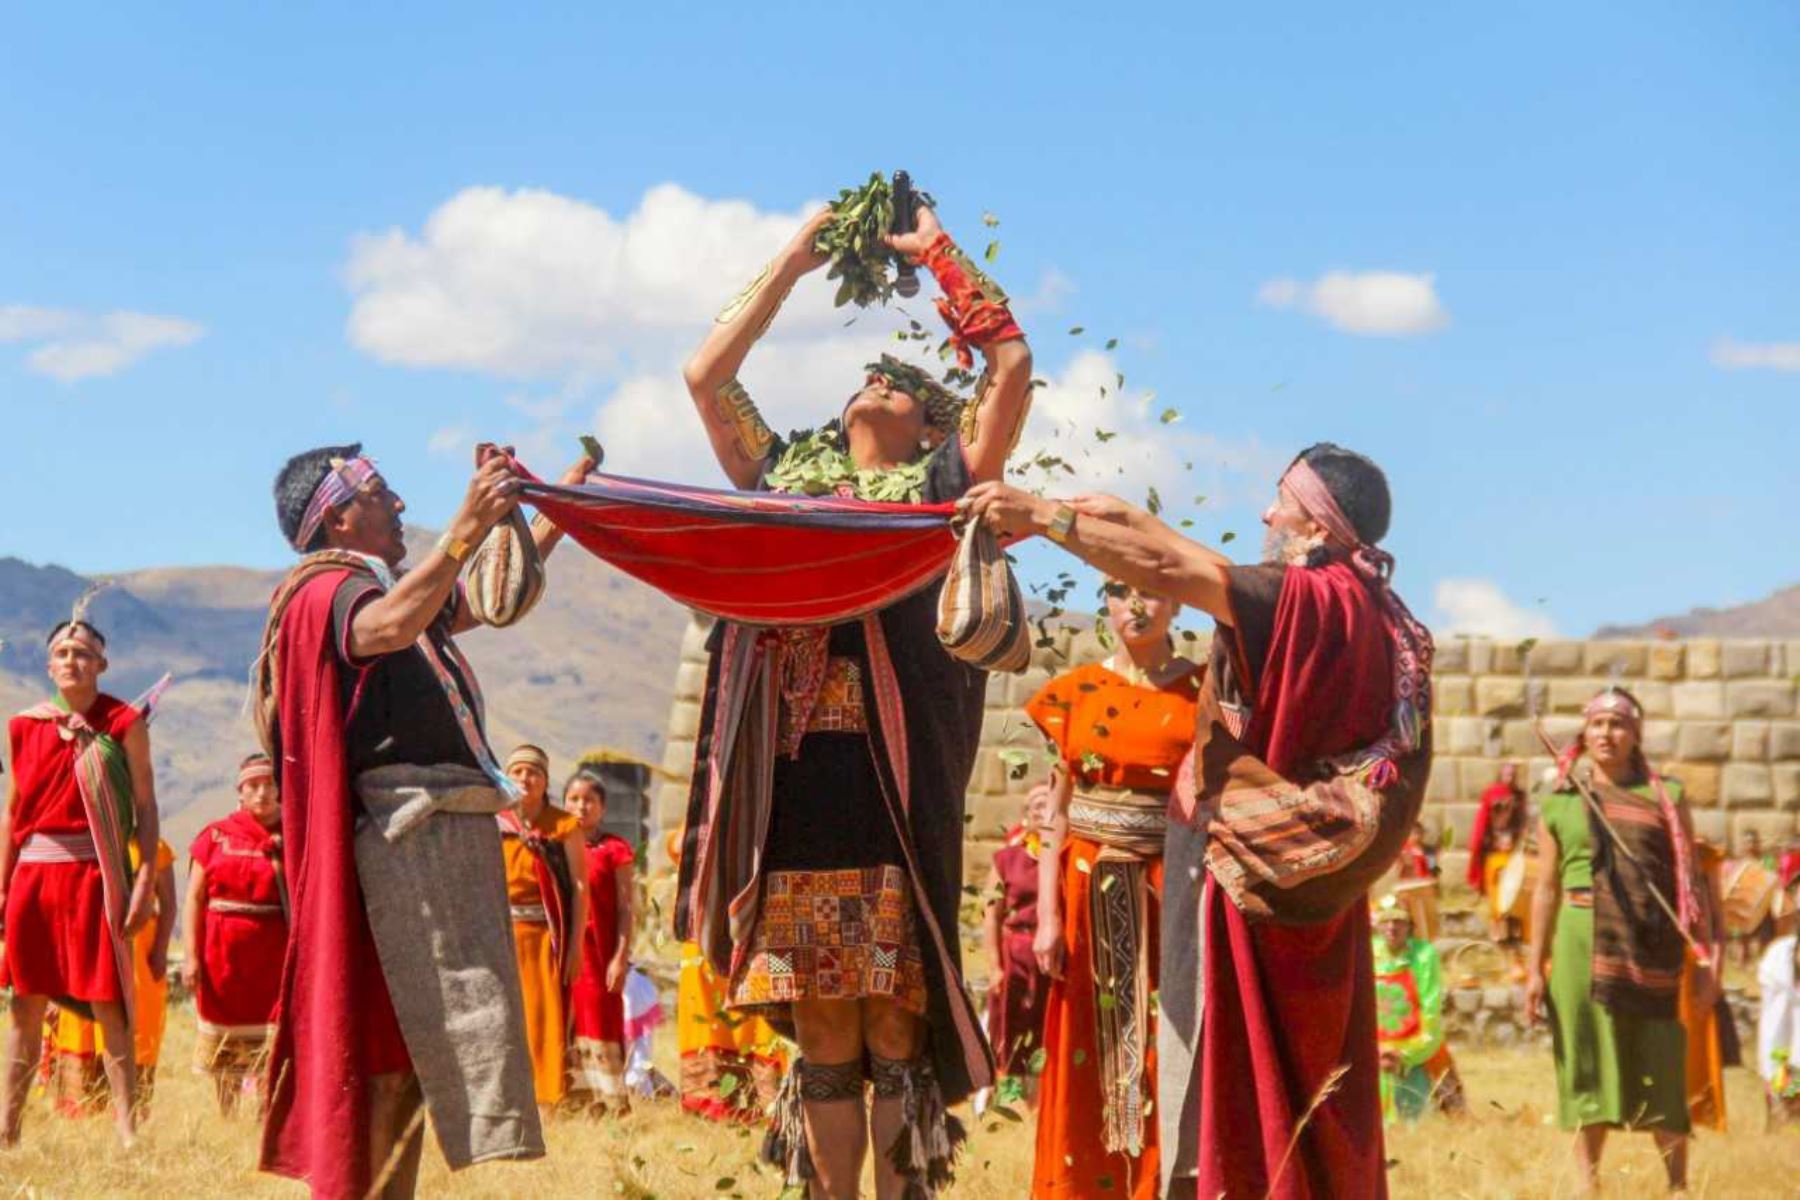 El Inti Raymi o Fiesta del Sol es la festividad de mayor tradición en los Andes peruanos. Y si bien el Cusco es más conocido como el epicentro de esta celebración, también se desarrolla con espectacular solemnidad en el distrito de La Unión, provincia de Dos de Mayo, región Huánuco, desde hace más de 20 años. Fotos: ANDINA/Cortesia Jeny Valladares